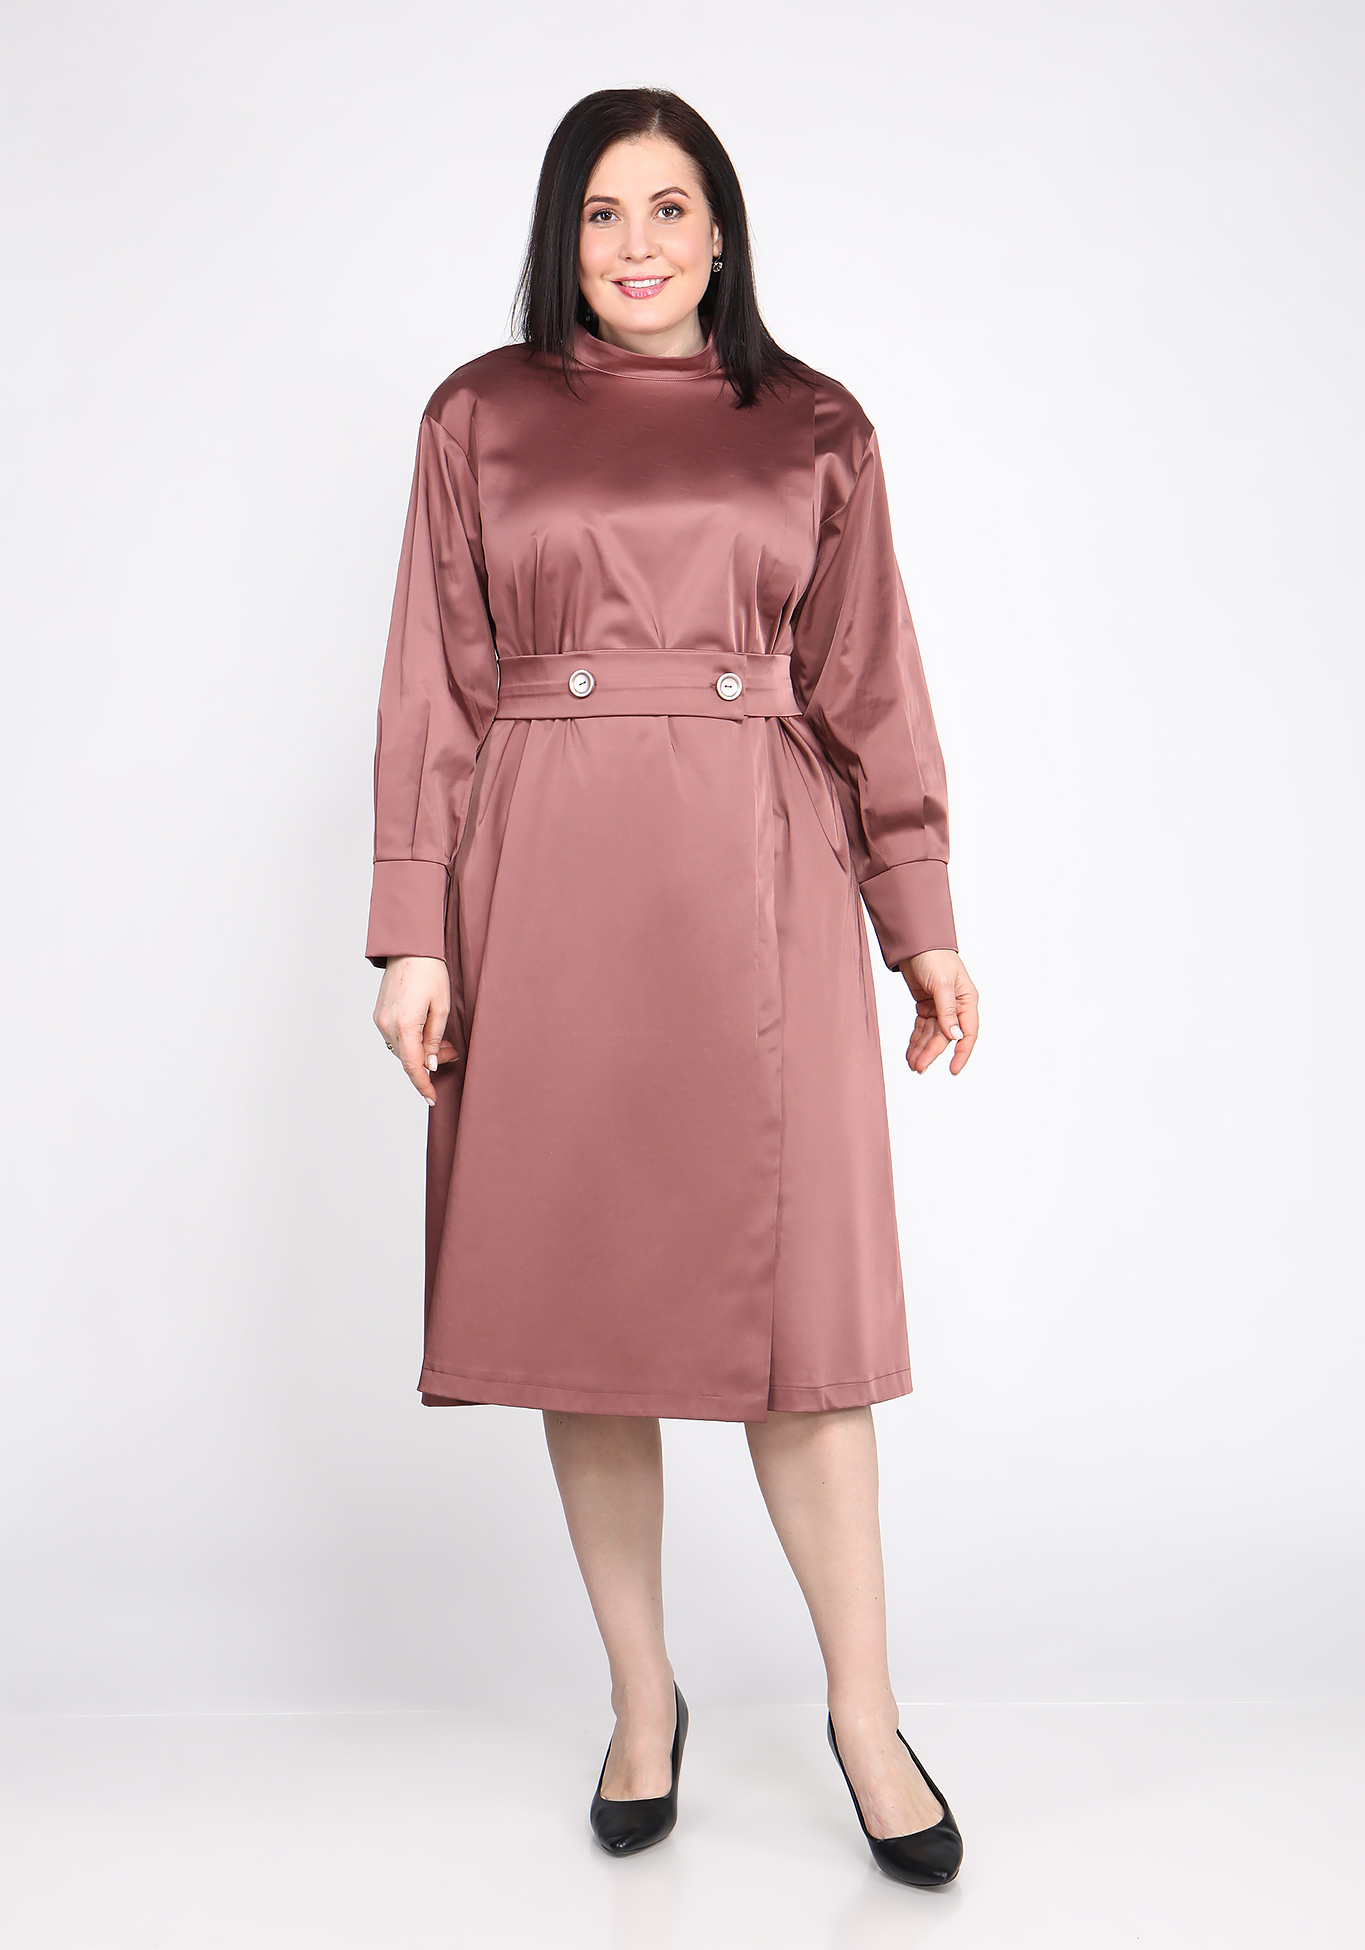 Платье с поясом на пуговицах Sarah Morenberg, размер 48, цвет тёмно-лиловый - фото 2